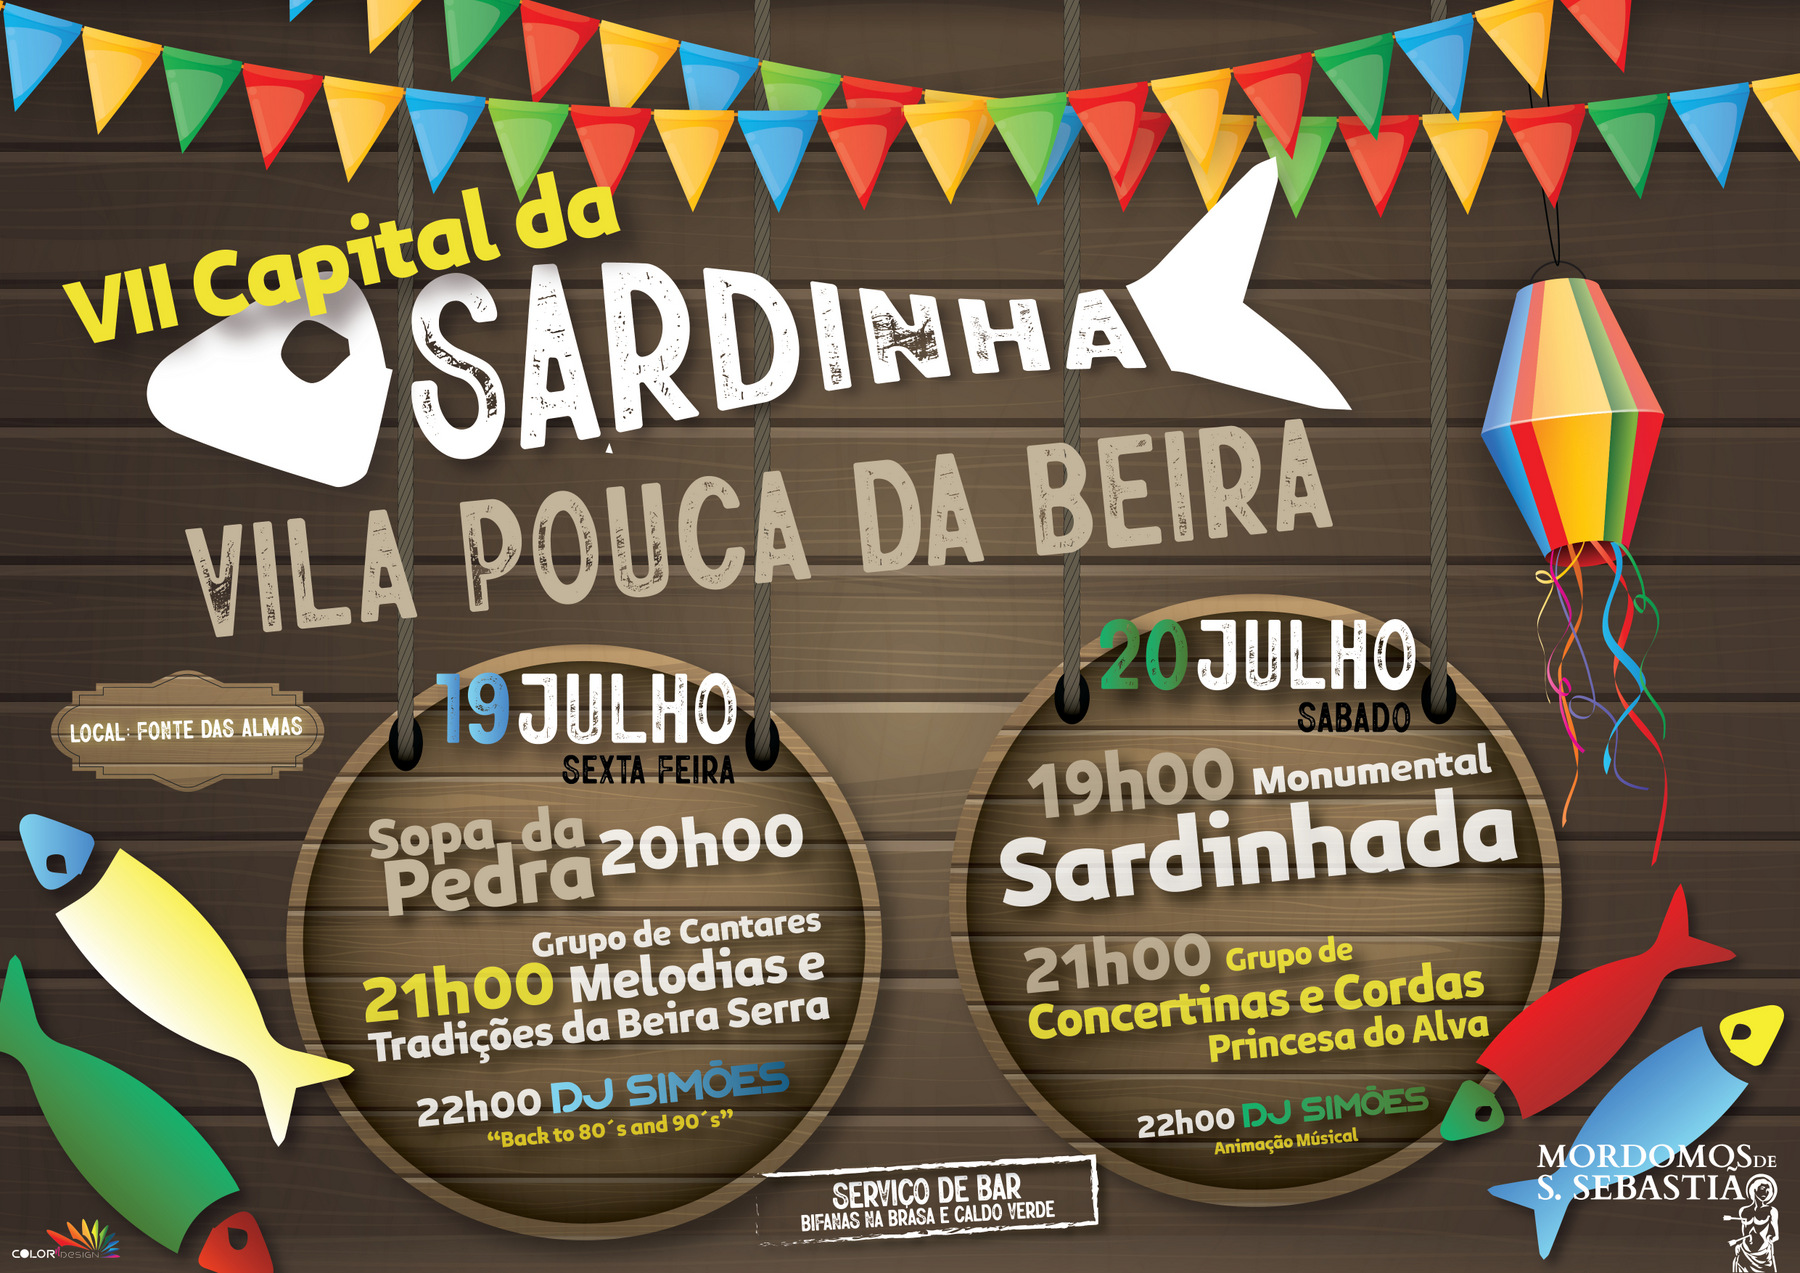 VII Capital da Sardinha - Vila Pouca da Beira